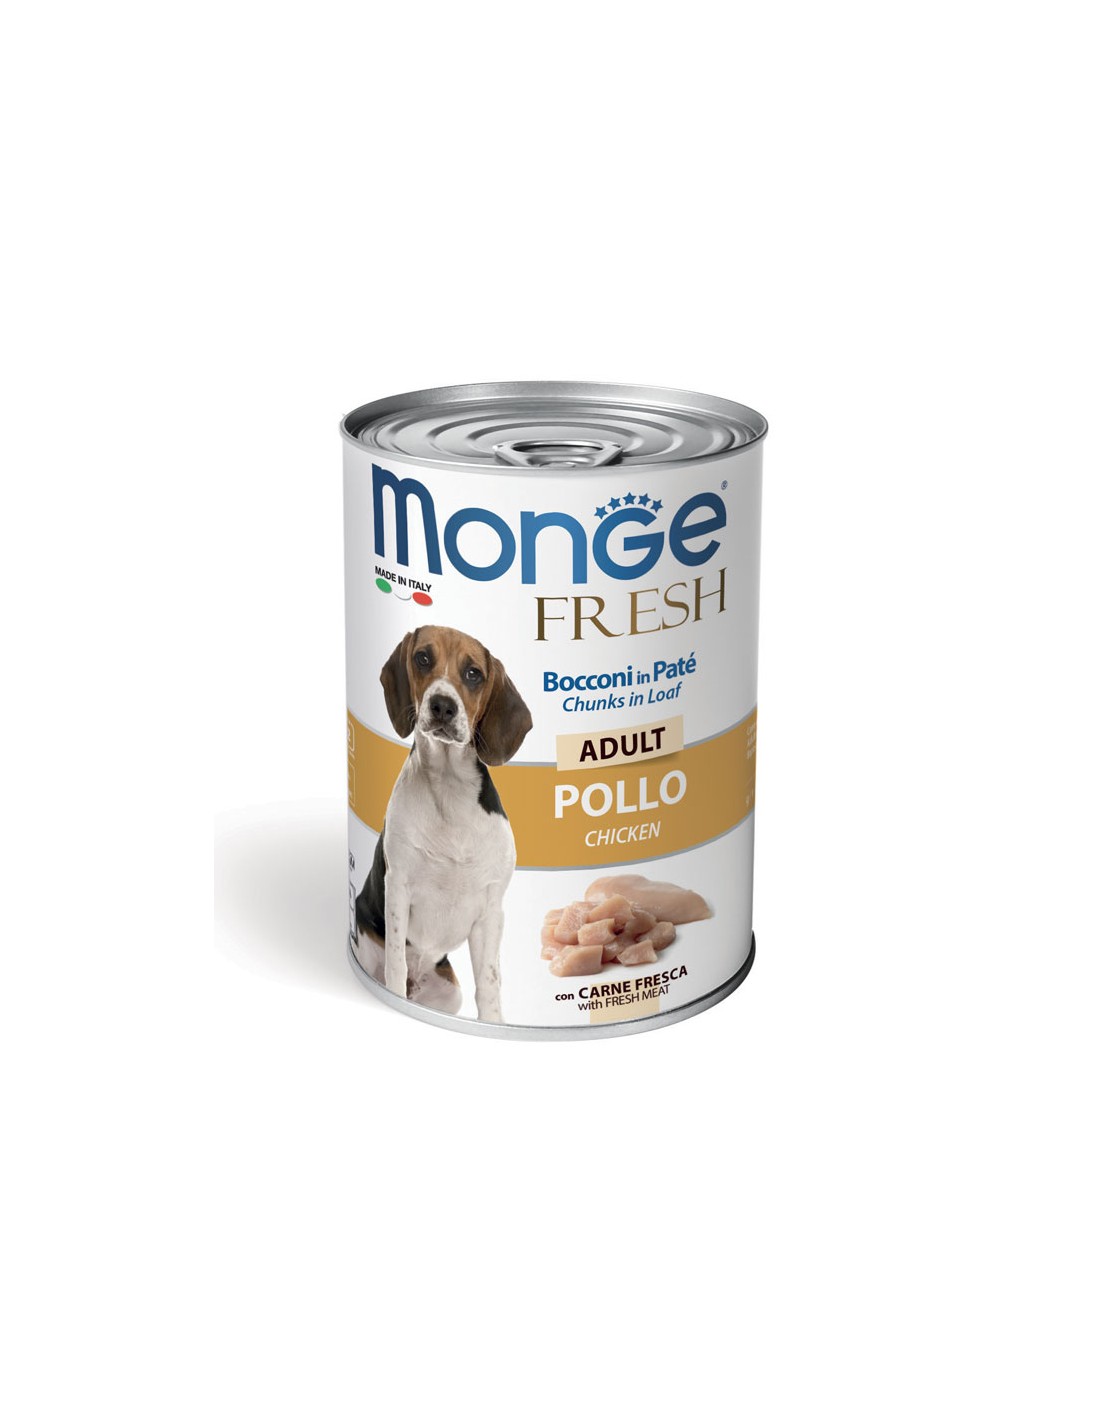 Влажный корм monge для собак. Монж Фреш для собак консервы. Monge Fresh консервы для собак. Monge Fresh консервы для собак 400 g. Monge Fresh консервы для собак Adult.